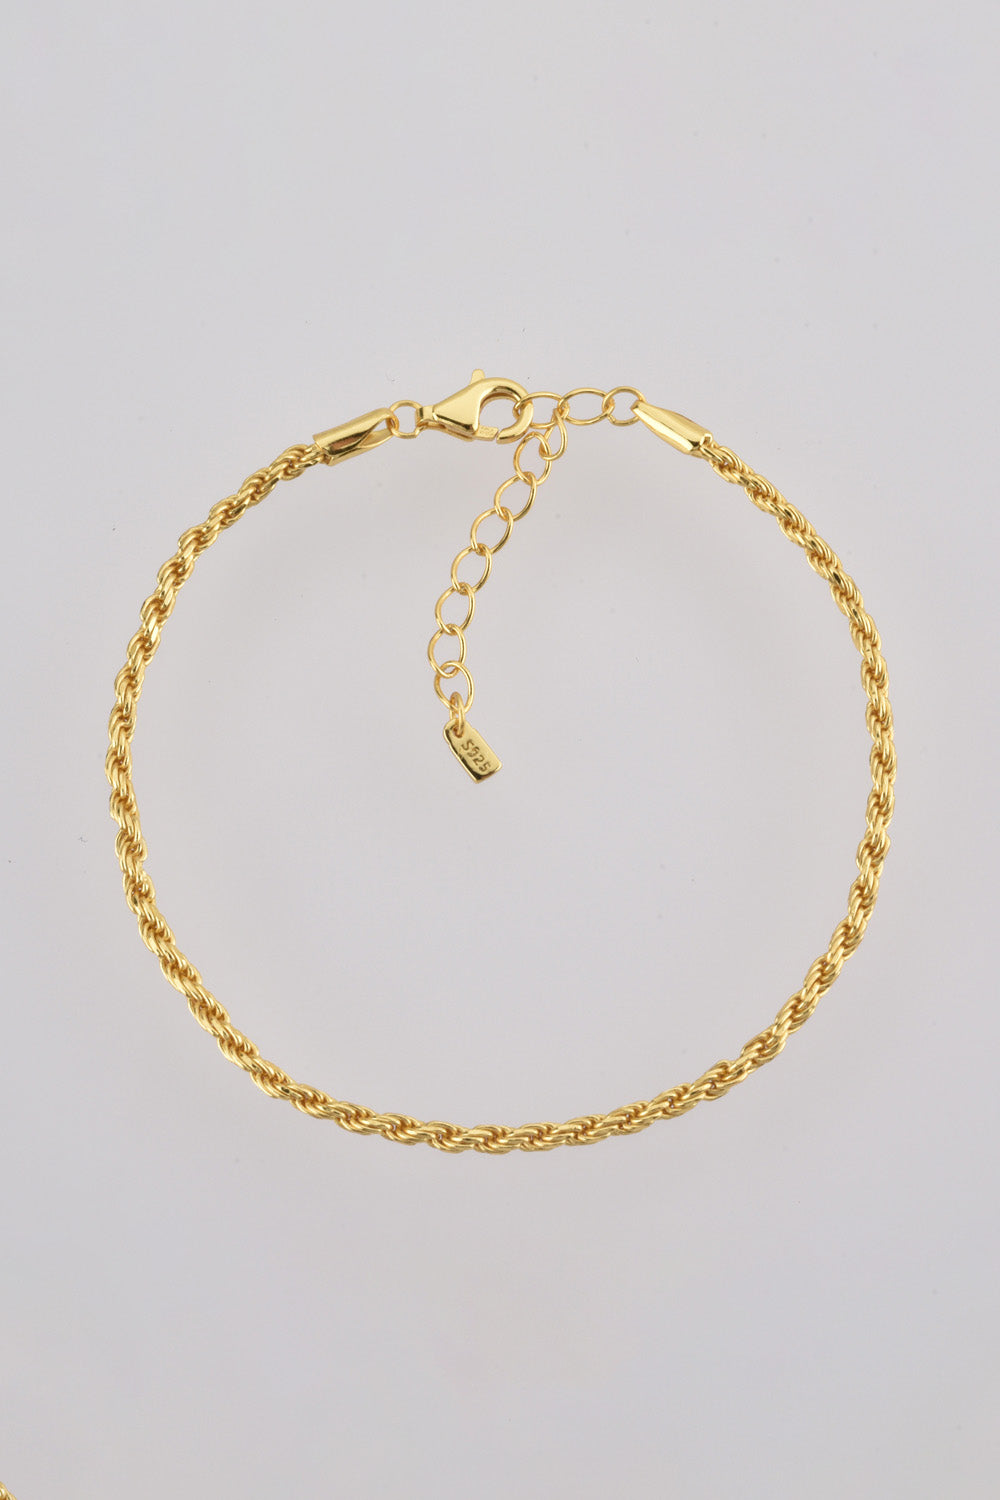 925 Sterling Silver Twisted Bracelet - Women’s Jewelry - Bracelets - 5 - 2024